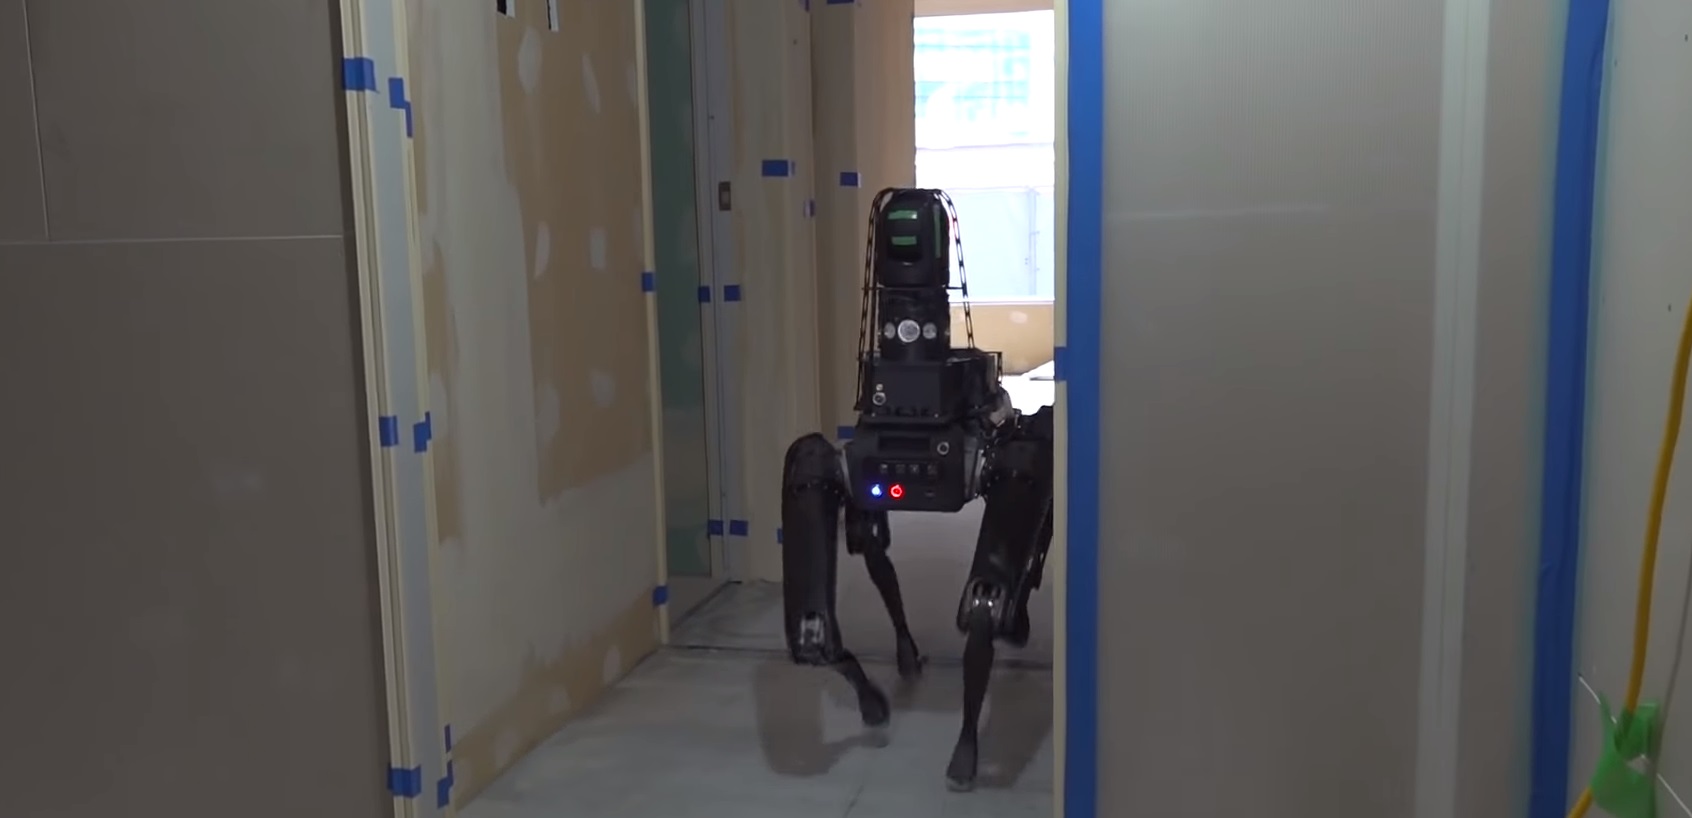 Boston Dynamics predstavila svoj prvý komerčný robot